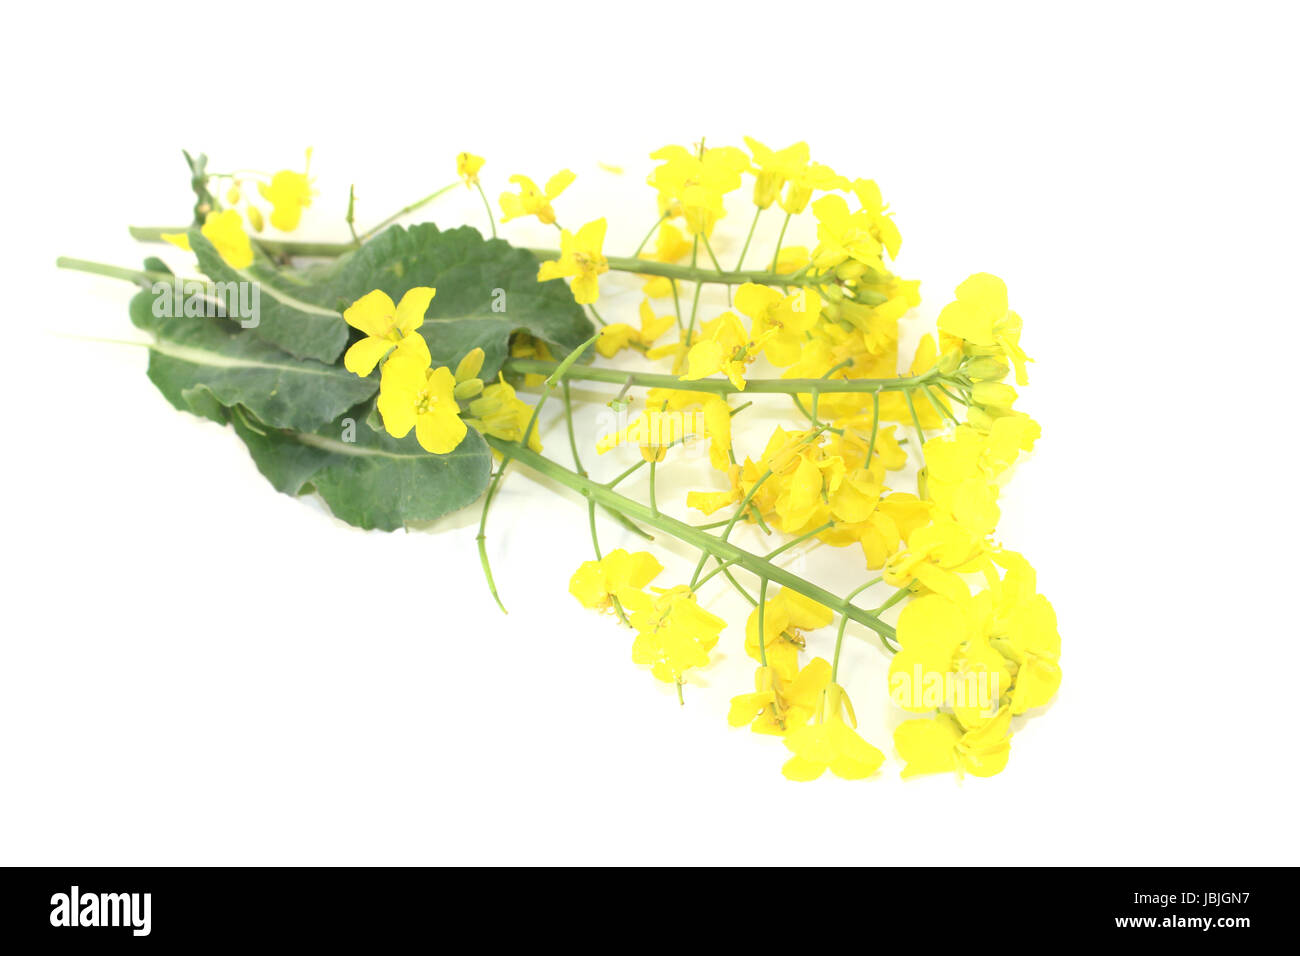 Frische gelbe Rapsblüten vor hellem Hintergrund Foto Stock